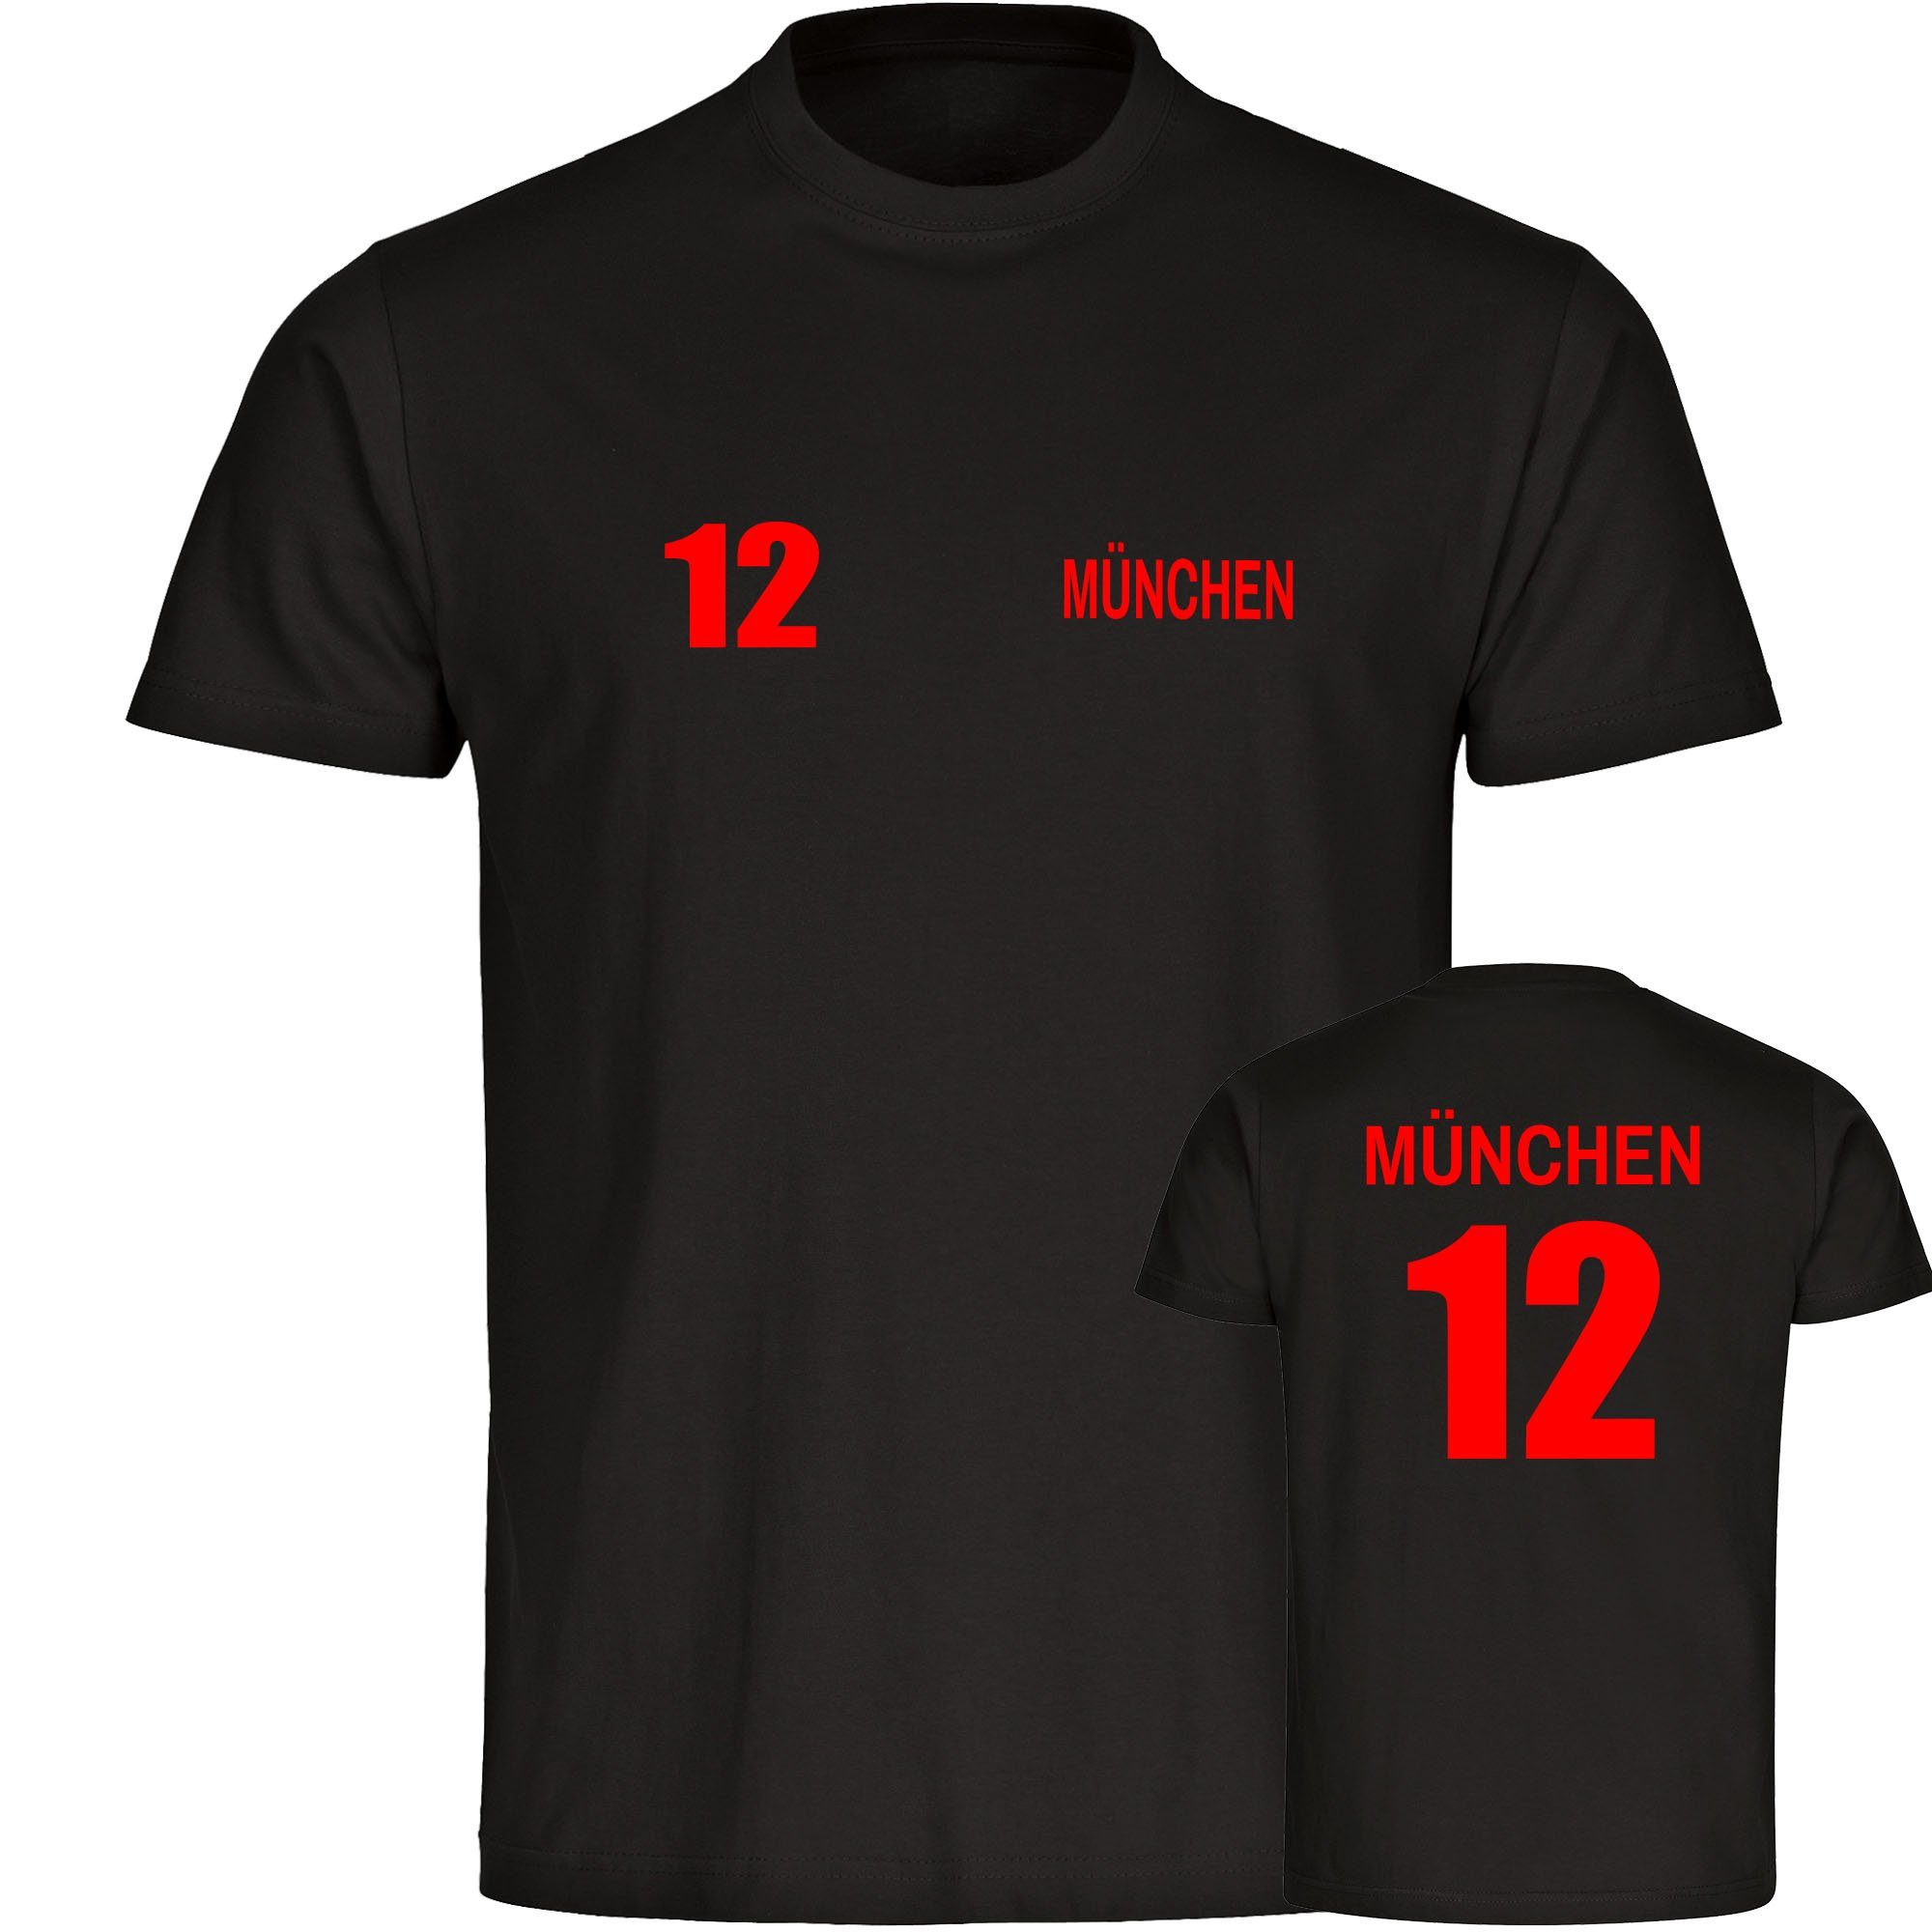 multifanshop T-Shirt Herren München rot - Trikot 12 - Männer